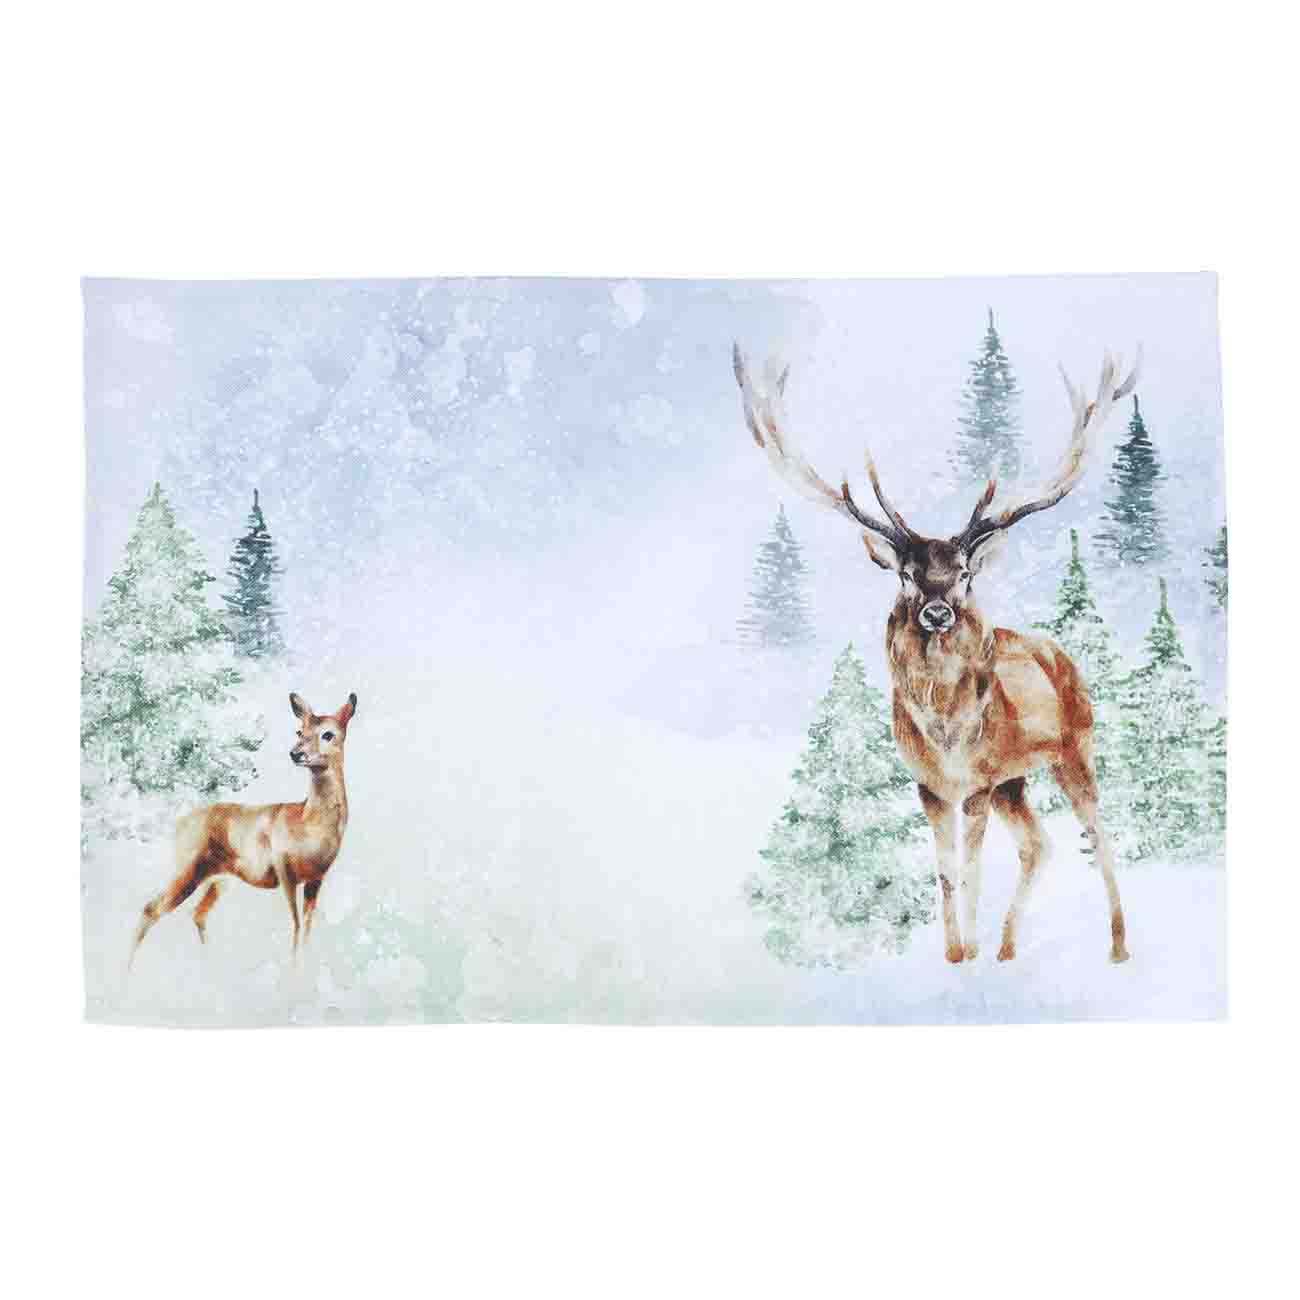 Салфетка под приборы, 30х45 см, полиэстер, прямоугольная, белая, Олени в лесу, Forest deer - фото 1